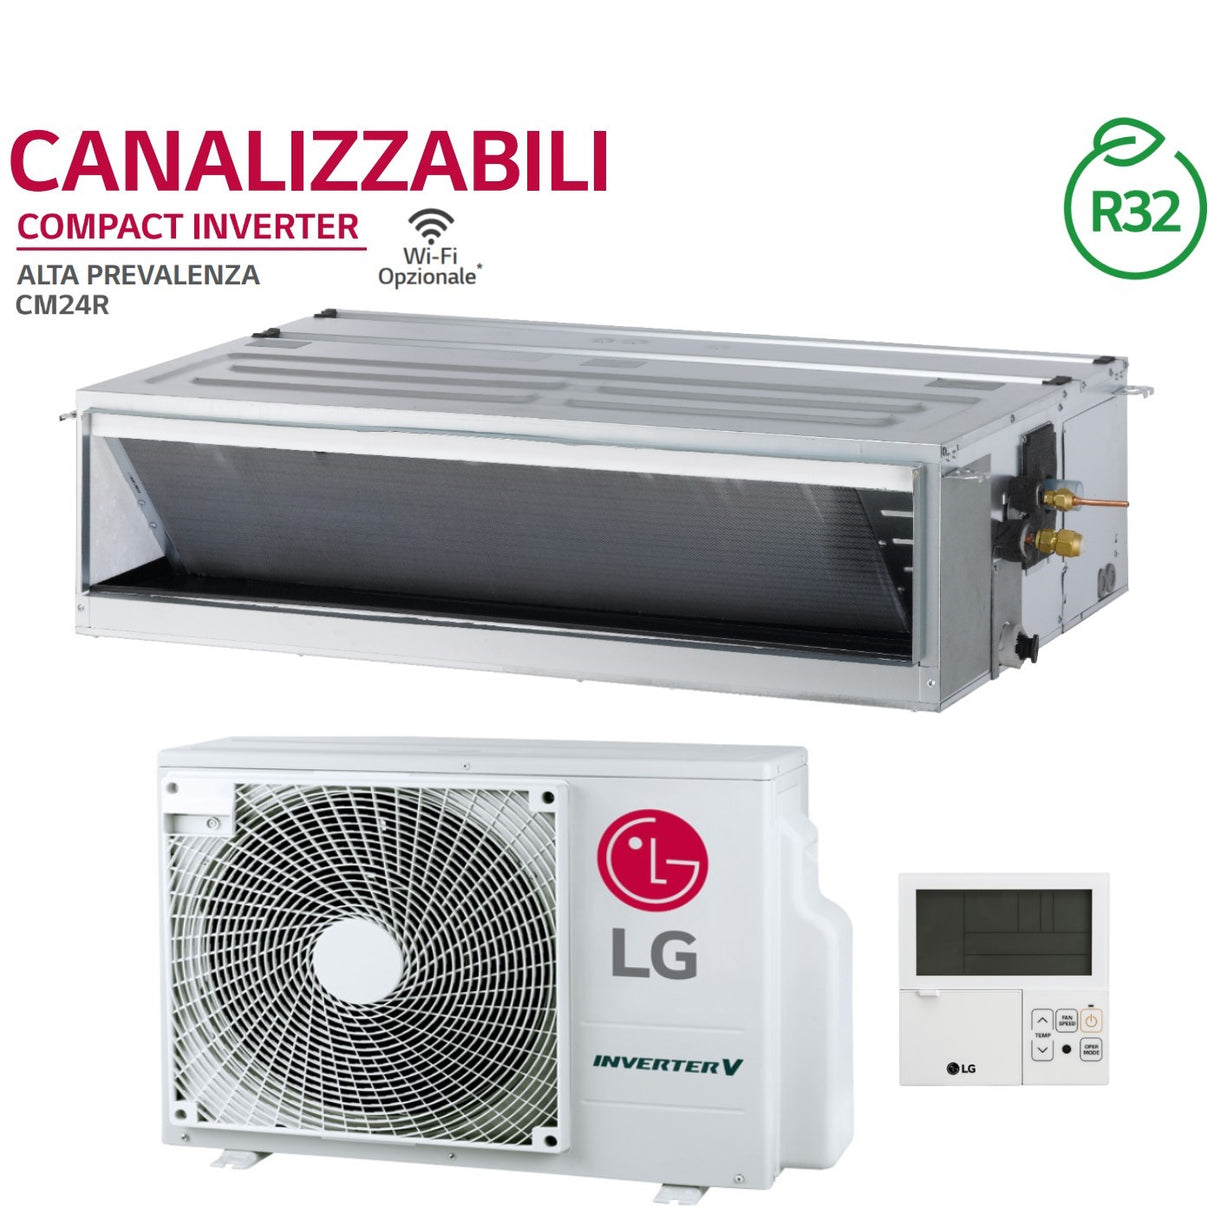 immagine-2-lg-climatizzatore-condizionatore-lg-canalizzabile-alta-prevalenza-24000-btu-cm24f-n10-r-32-wi-fi-optional-comando-a-filo-lg-premtb001